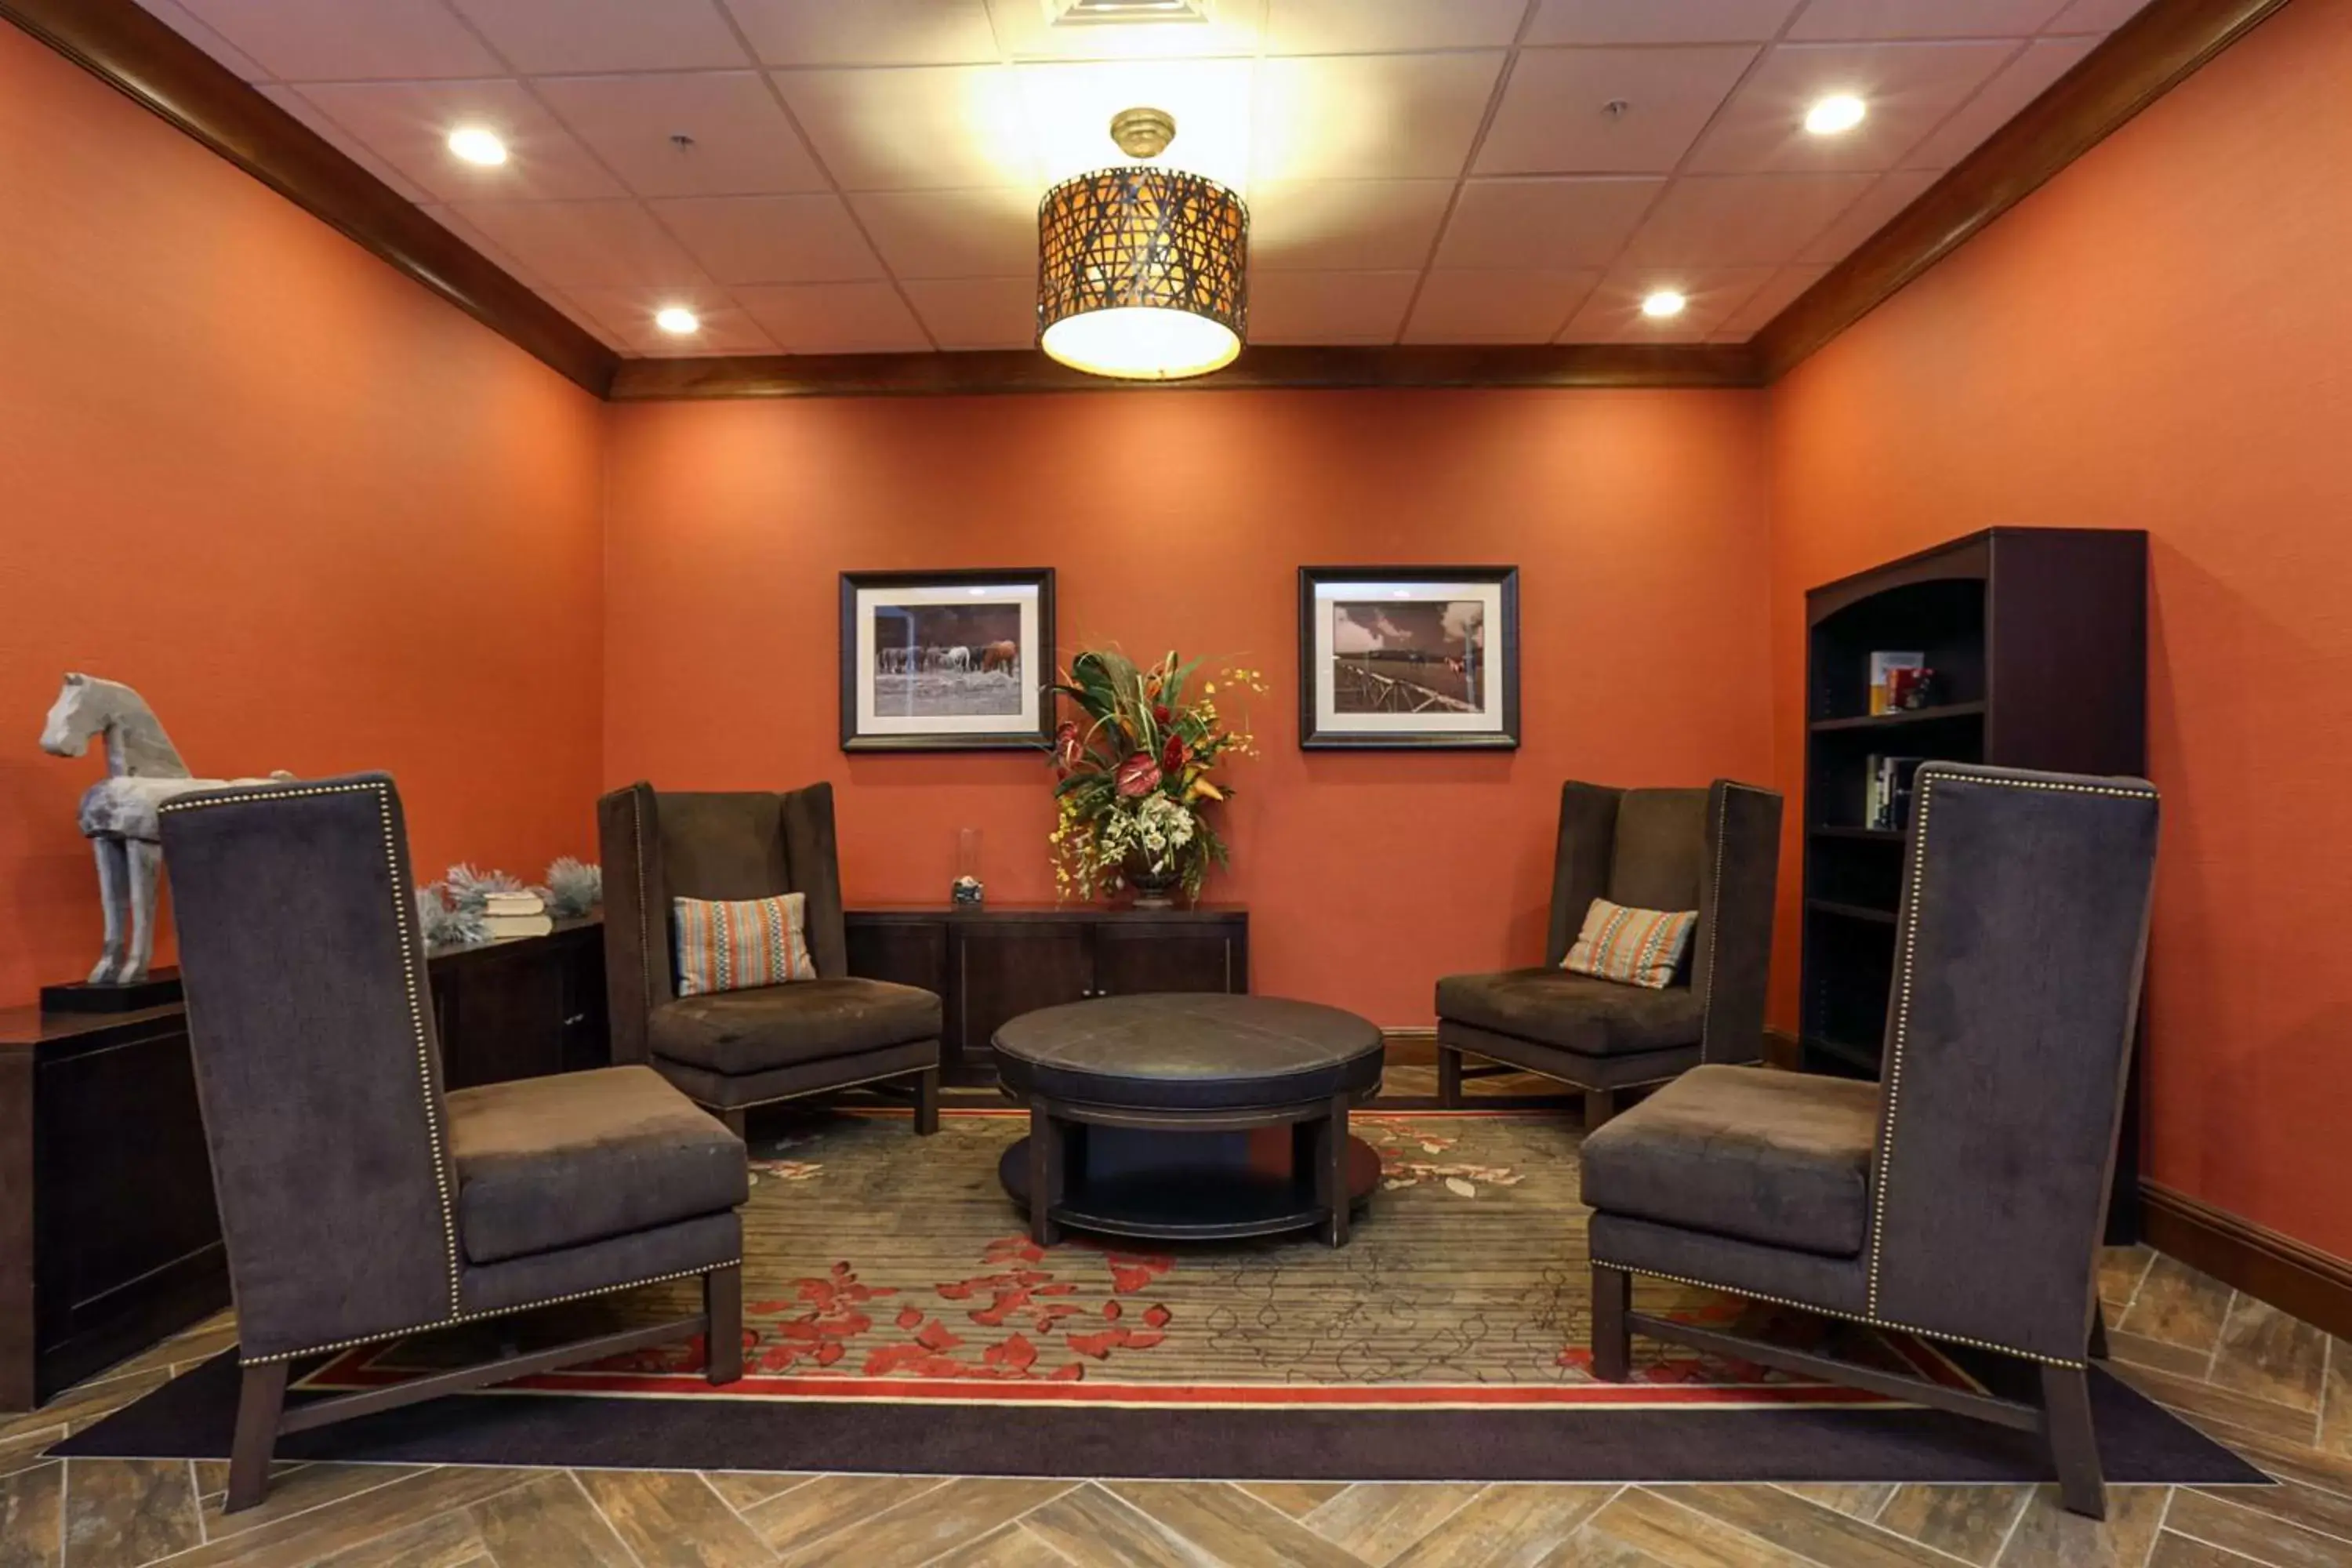 Lounge or bar, Lobby/Reception in Hilton Garden Inn Clifton Park